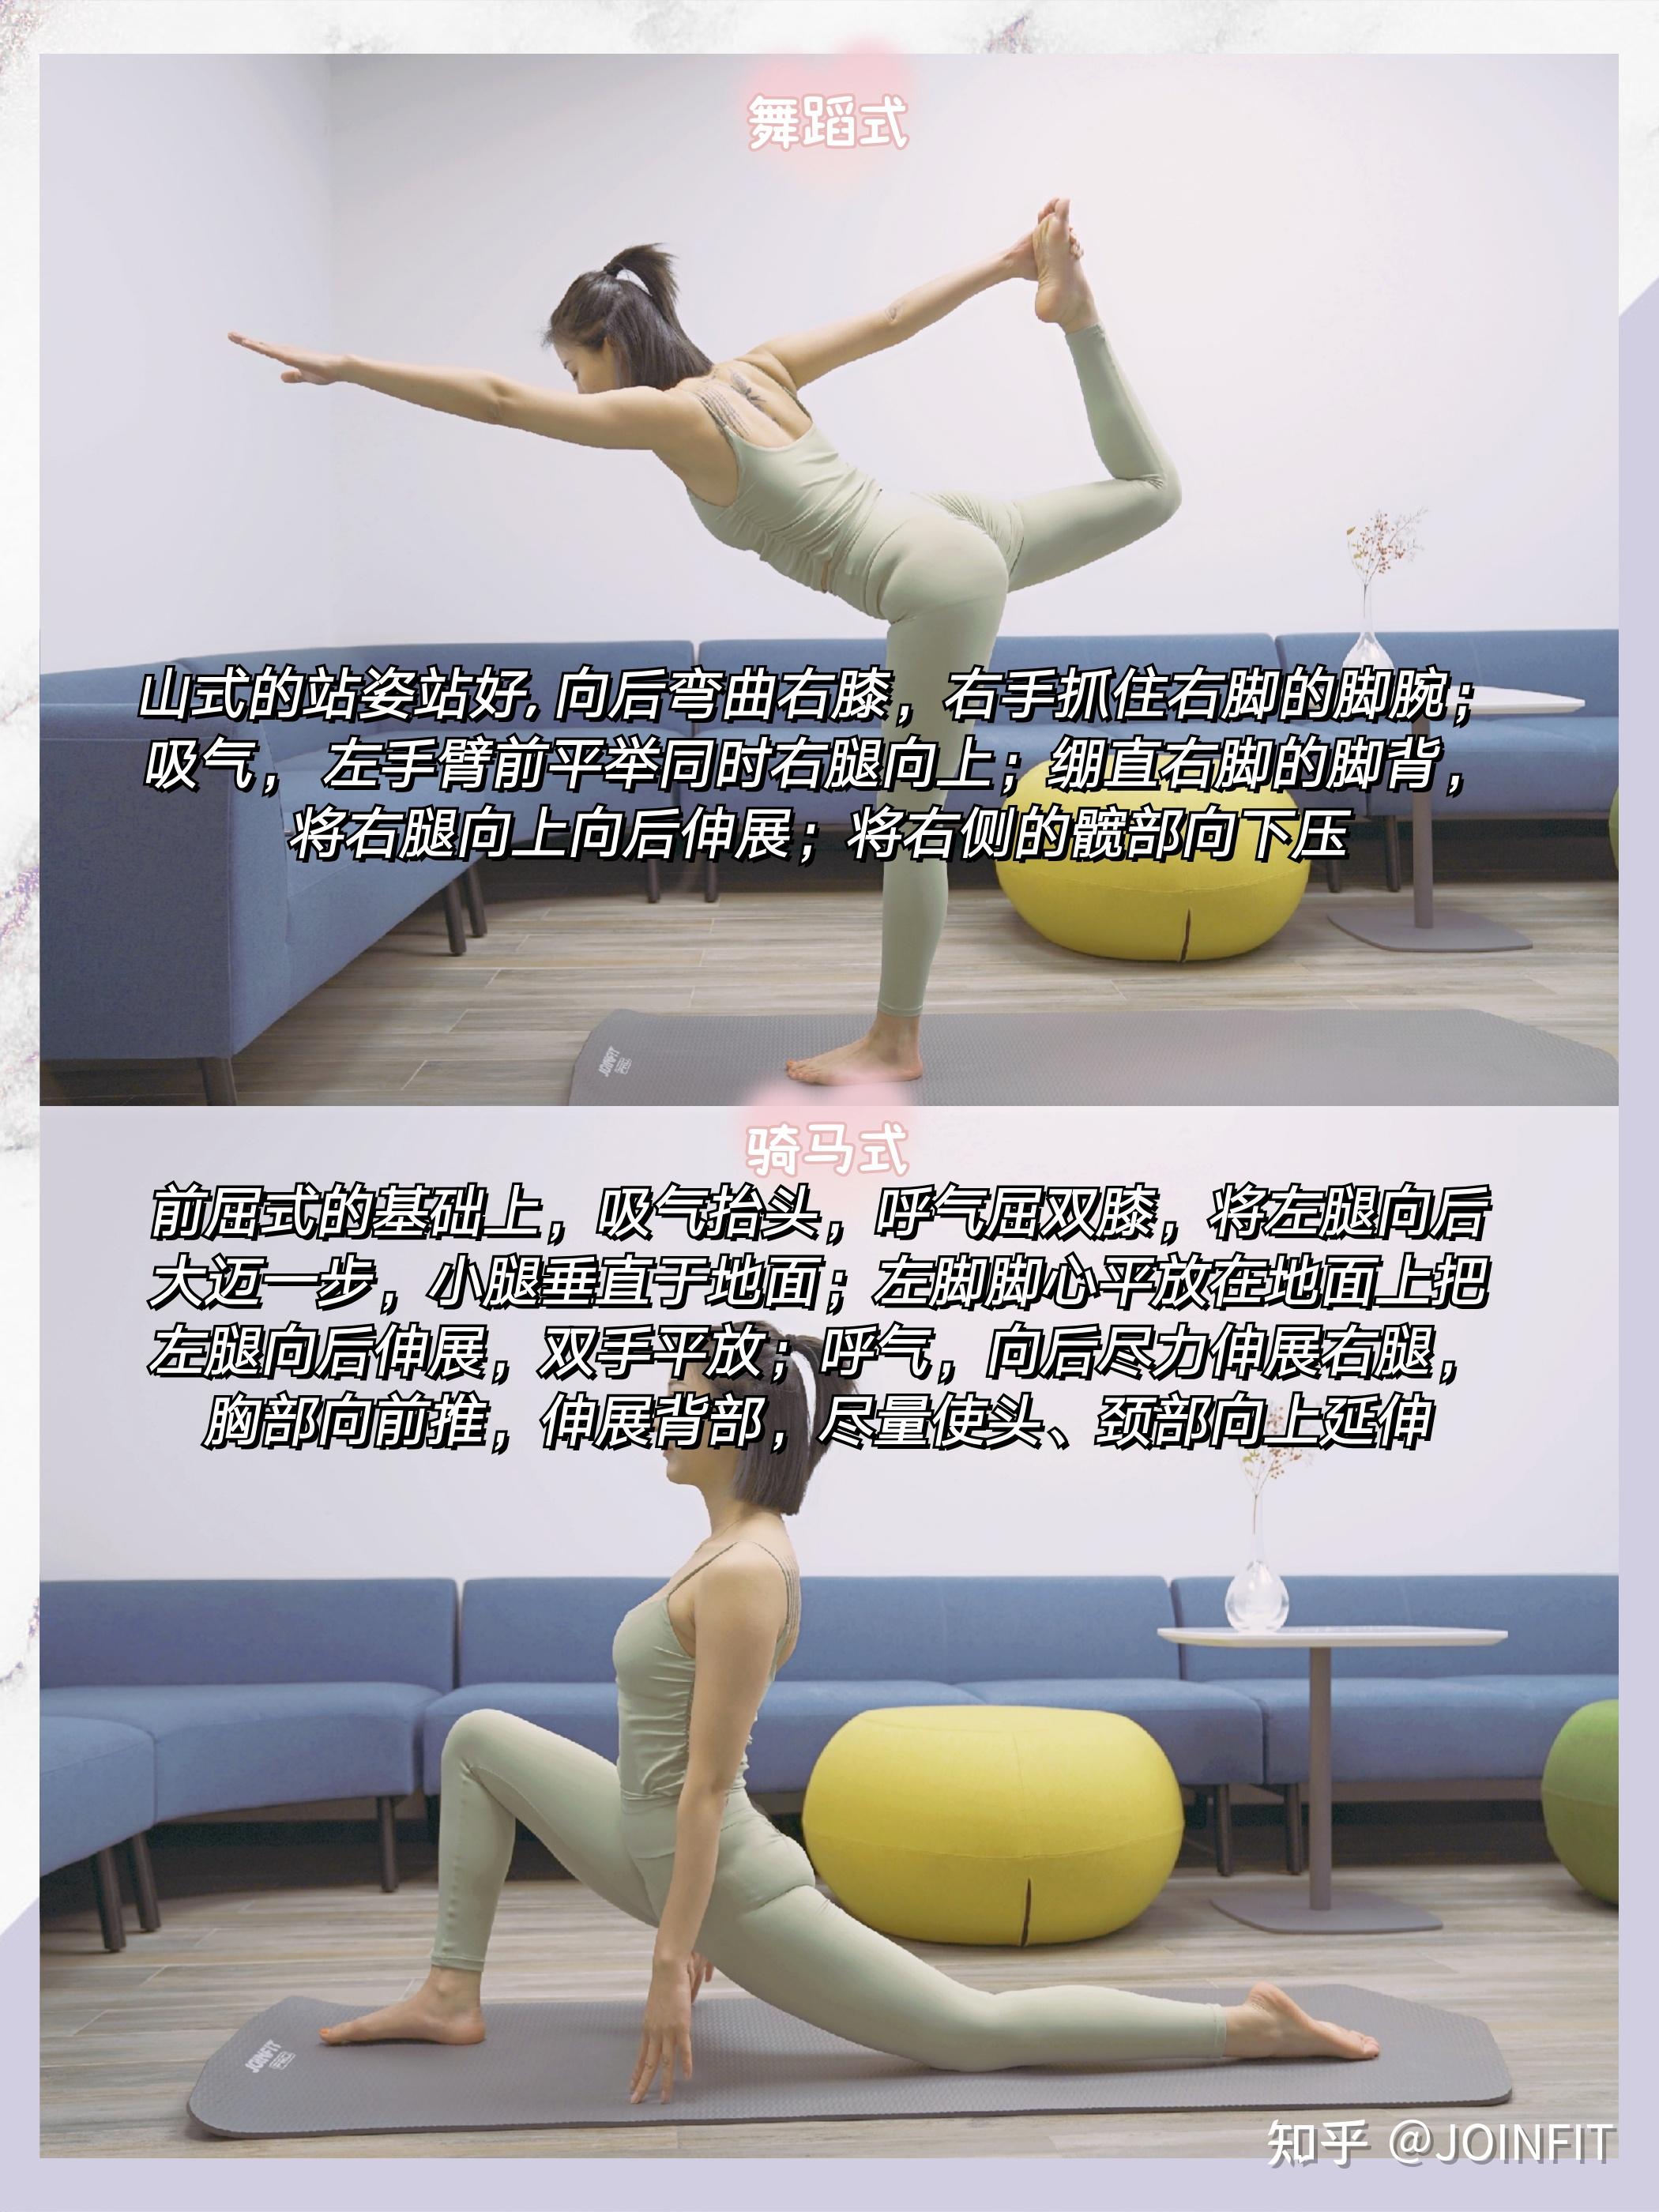 首都高校首届瑜伽体式展示表演赛在我校成功举办-体育部 - 北京物资学院